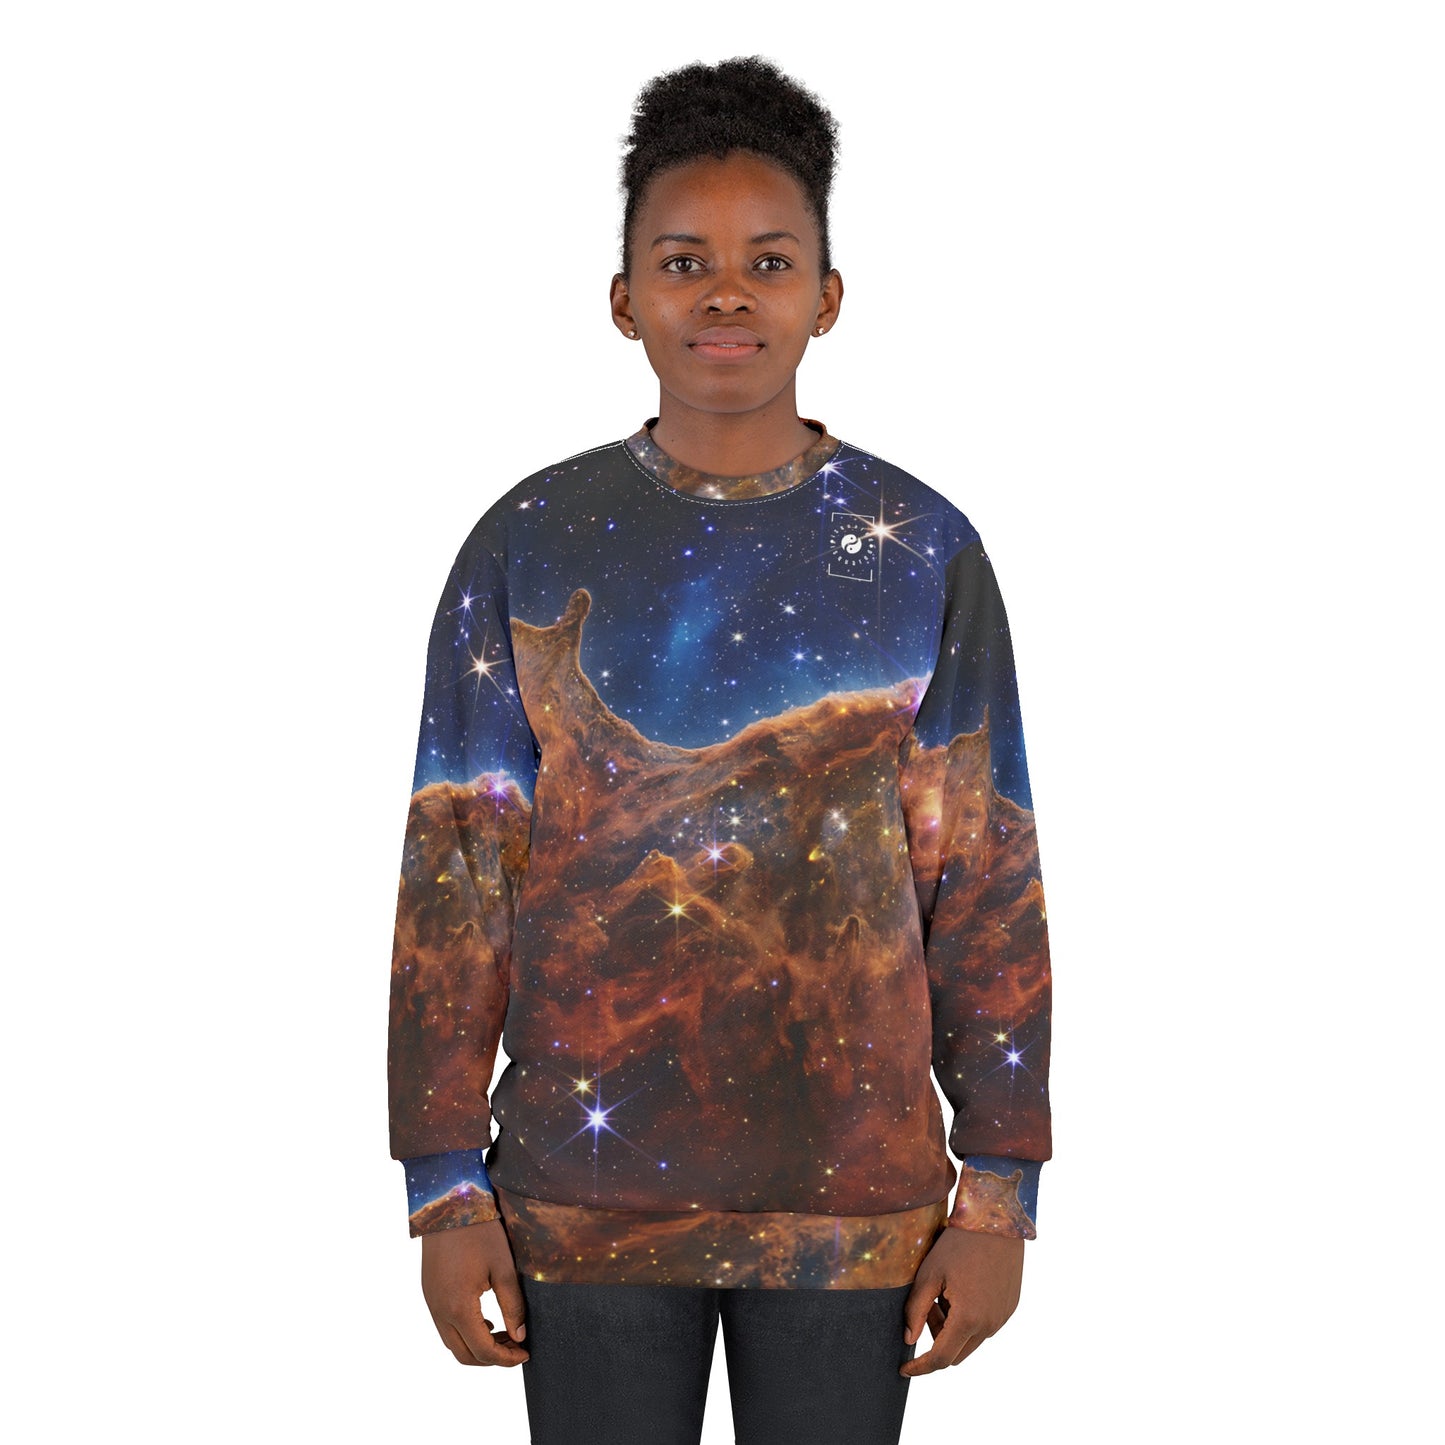 « Falaises cosmiques » dans la nébuleuse de la Carène (Image NIRCam) - Collection JWST - Sweat-shirt unisexe